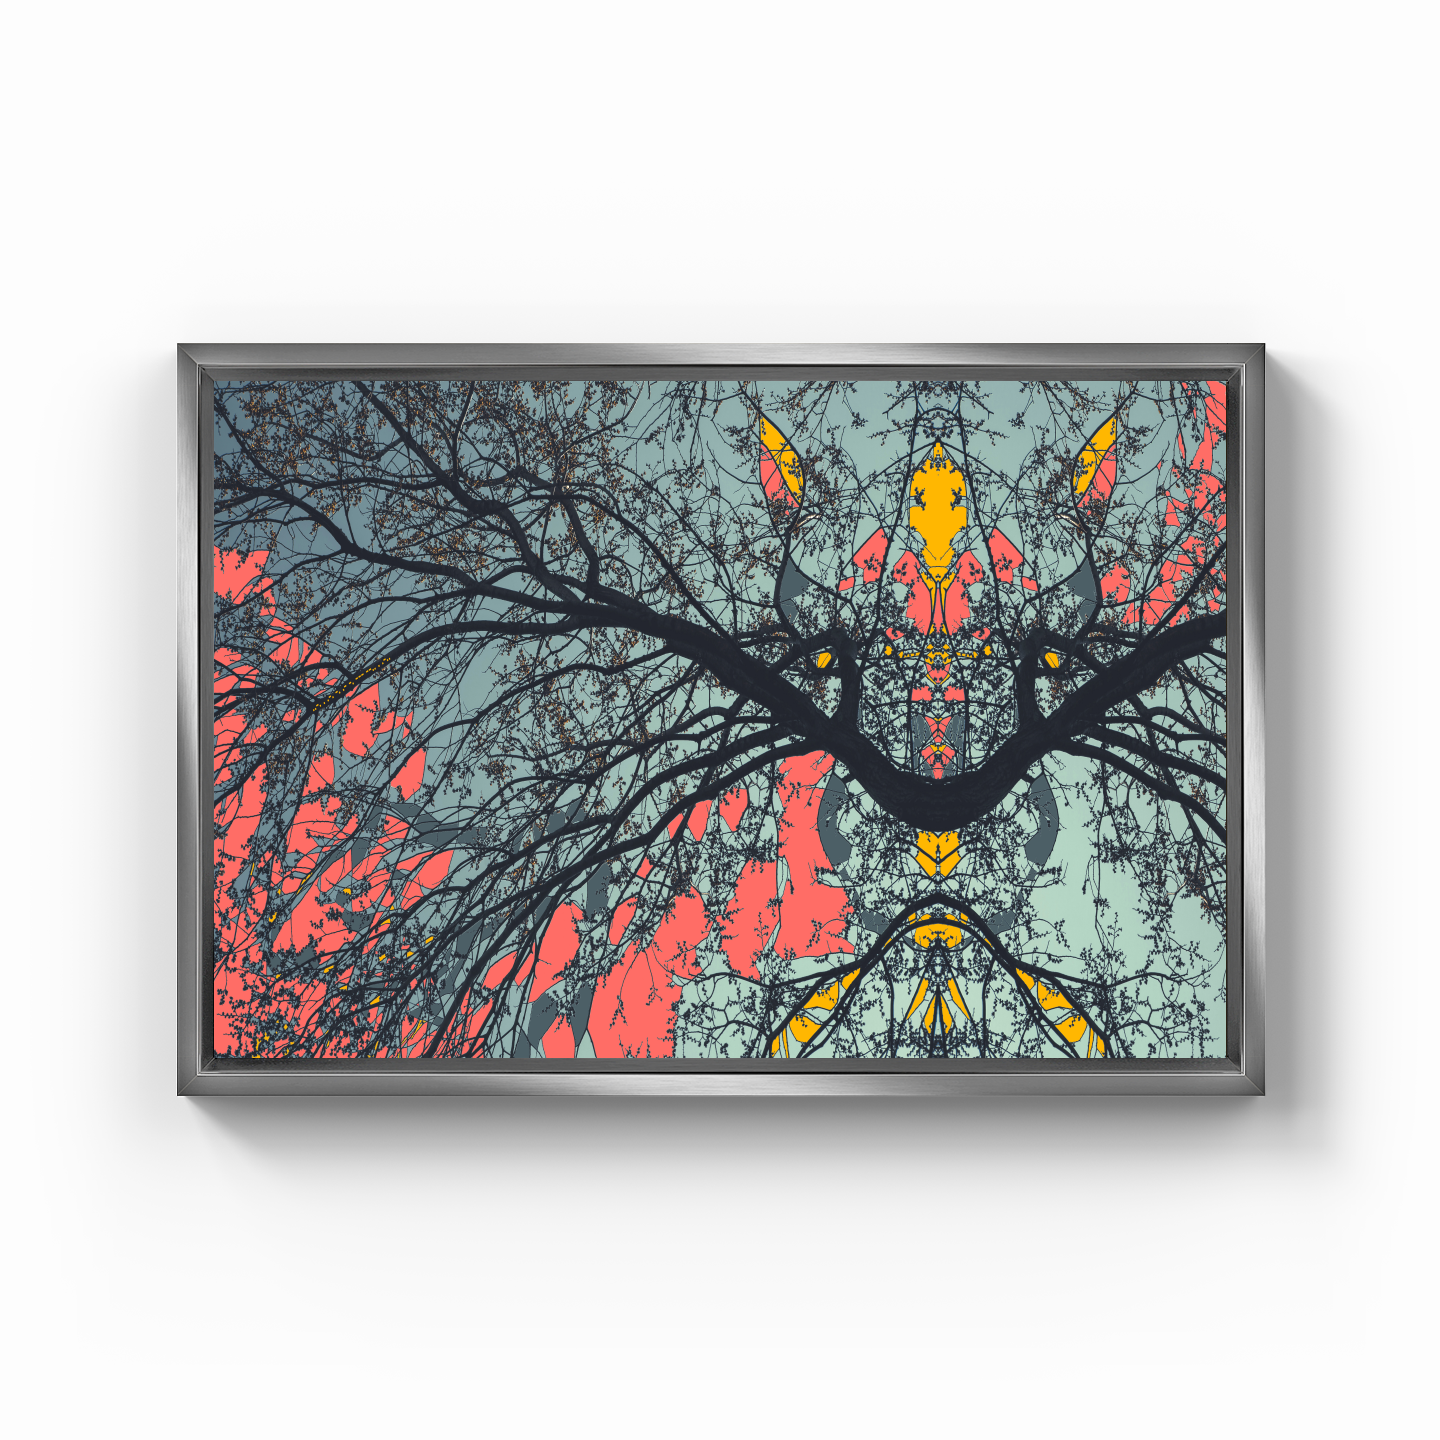 Simetri Ağaç Dal Orman Ekspresyonist Abstrakt Manzara No 02 - Kanvas Tablo